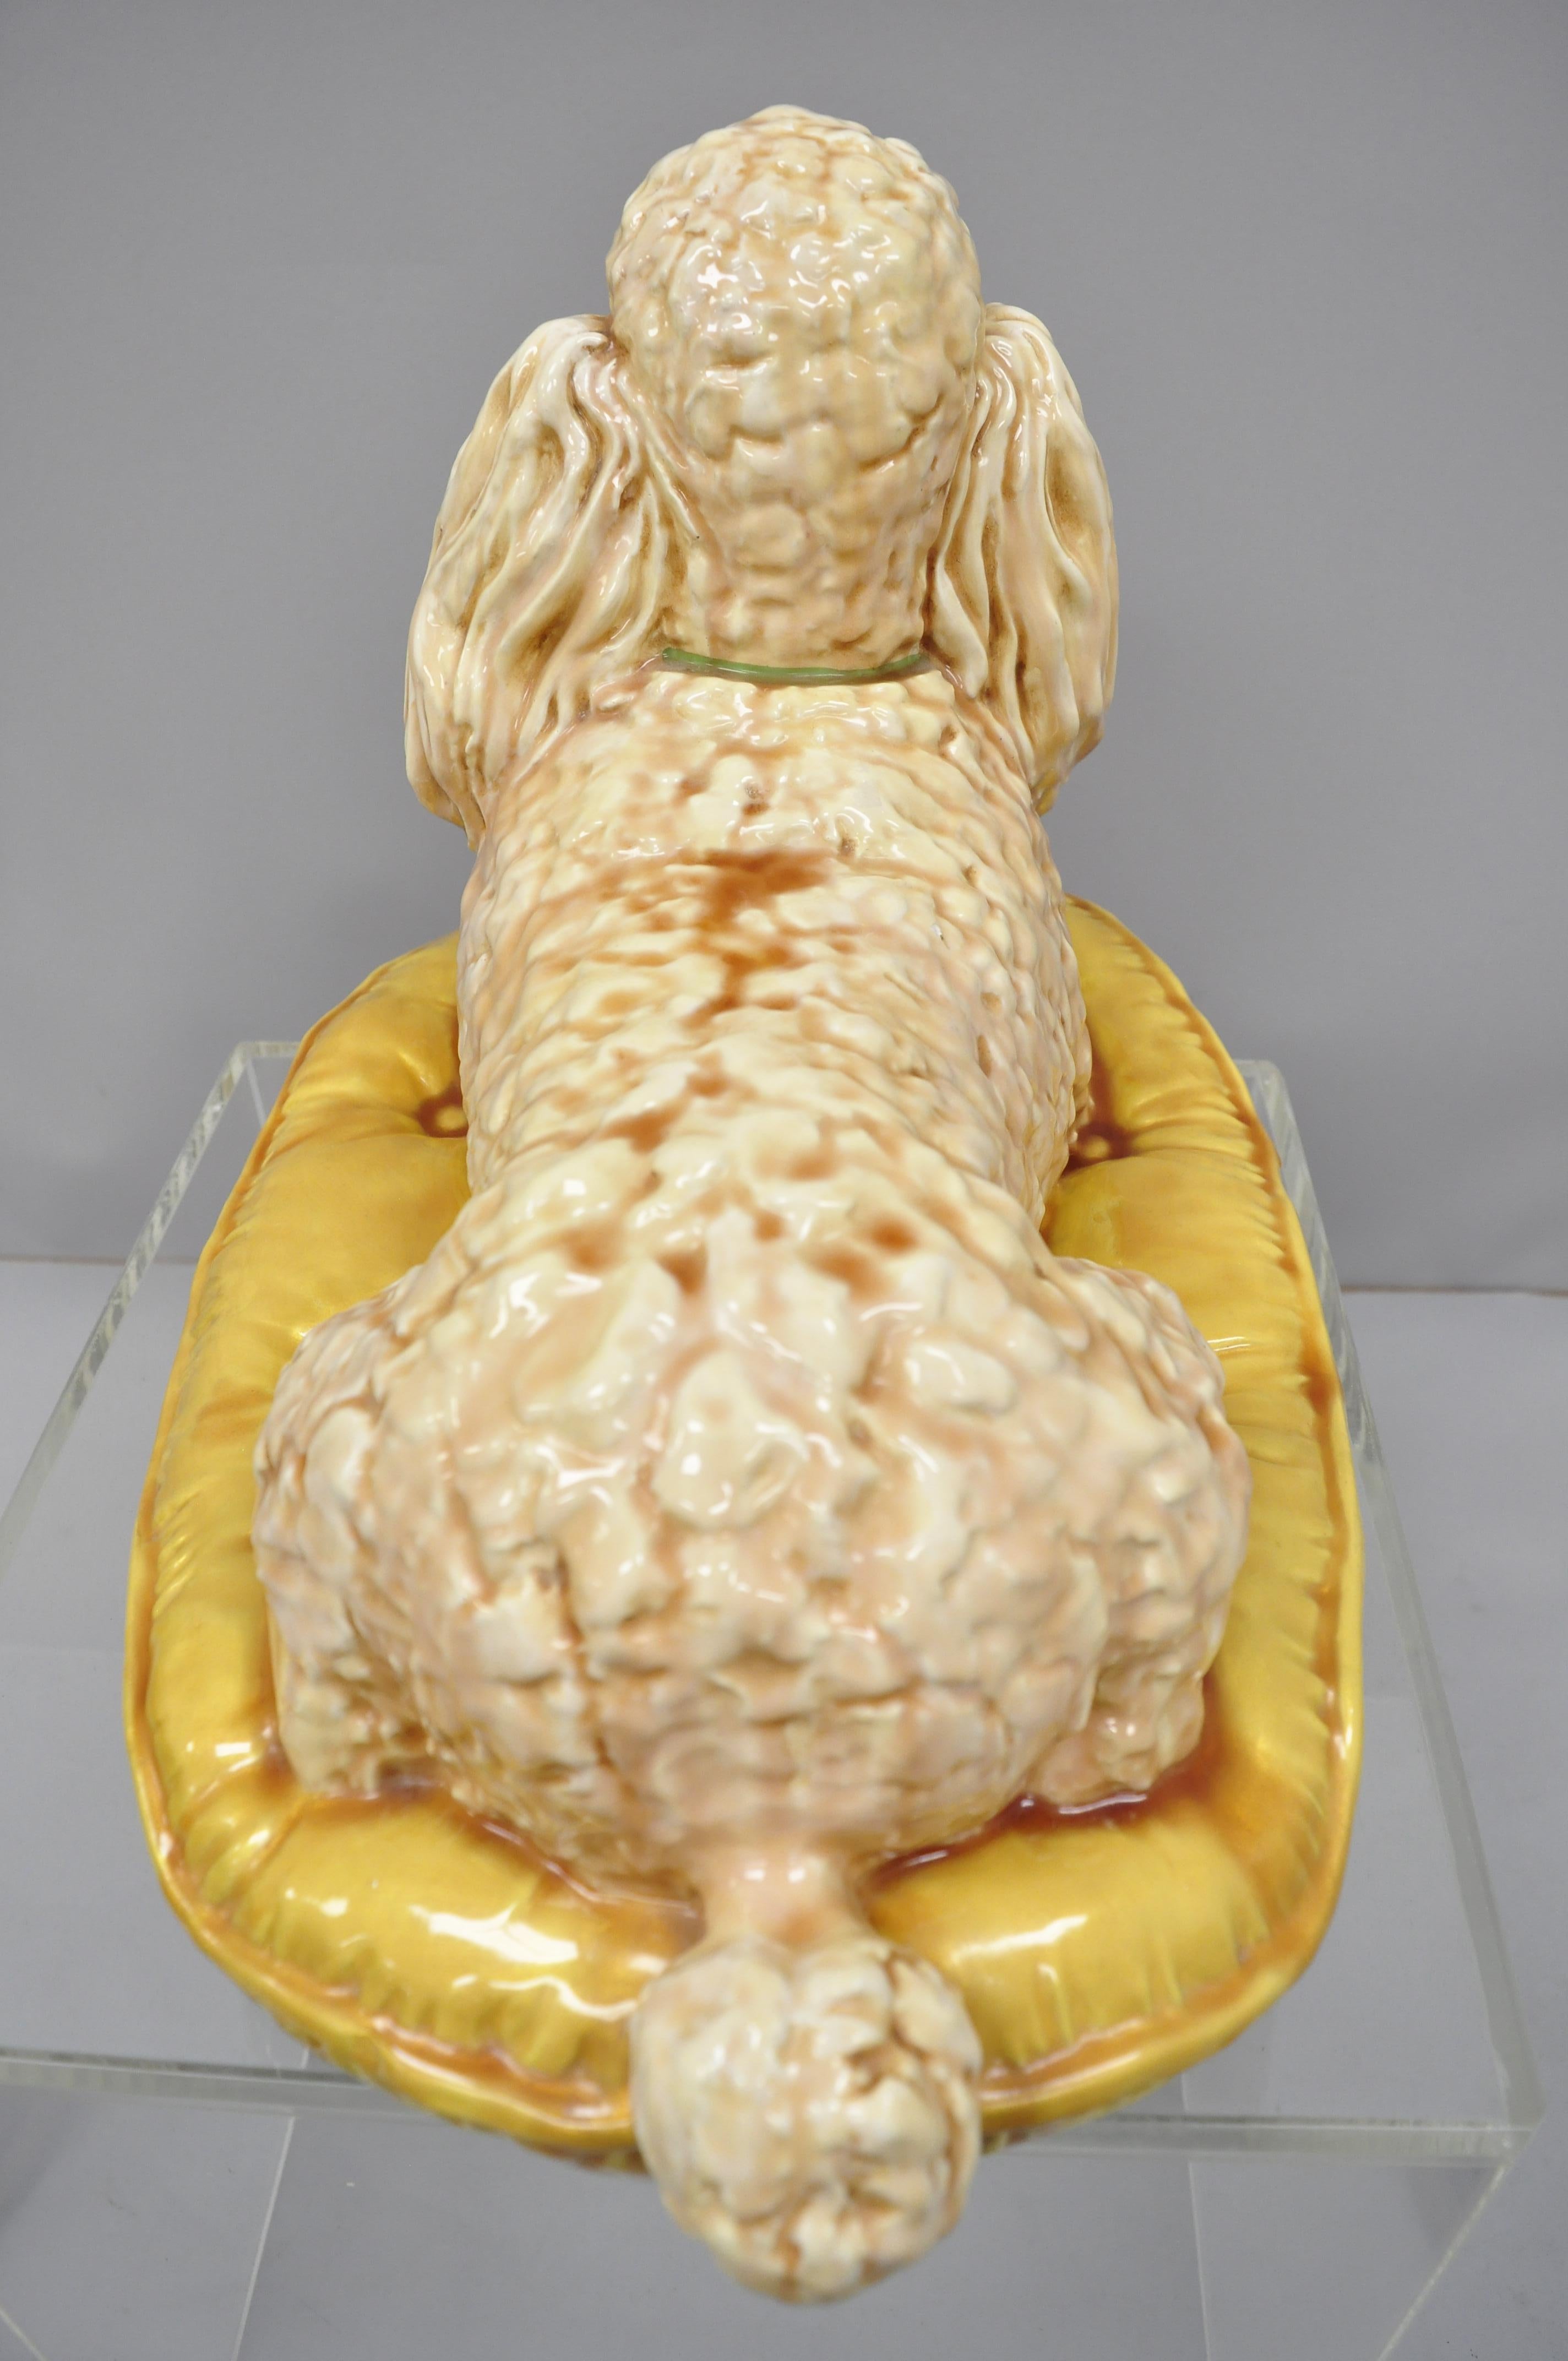 Vintage glasierte Keramik Pudel-Hunde-Figur auf Gold getuftetem Kissen, Statue-Figur, Vintage 1